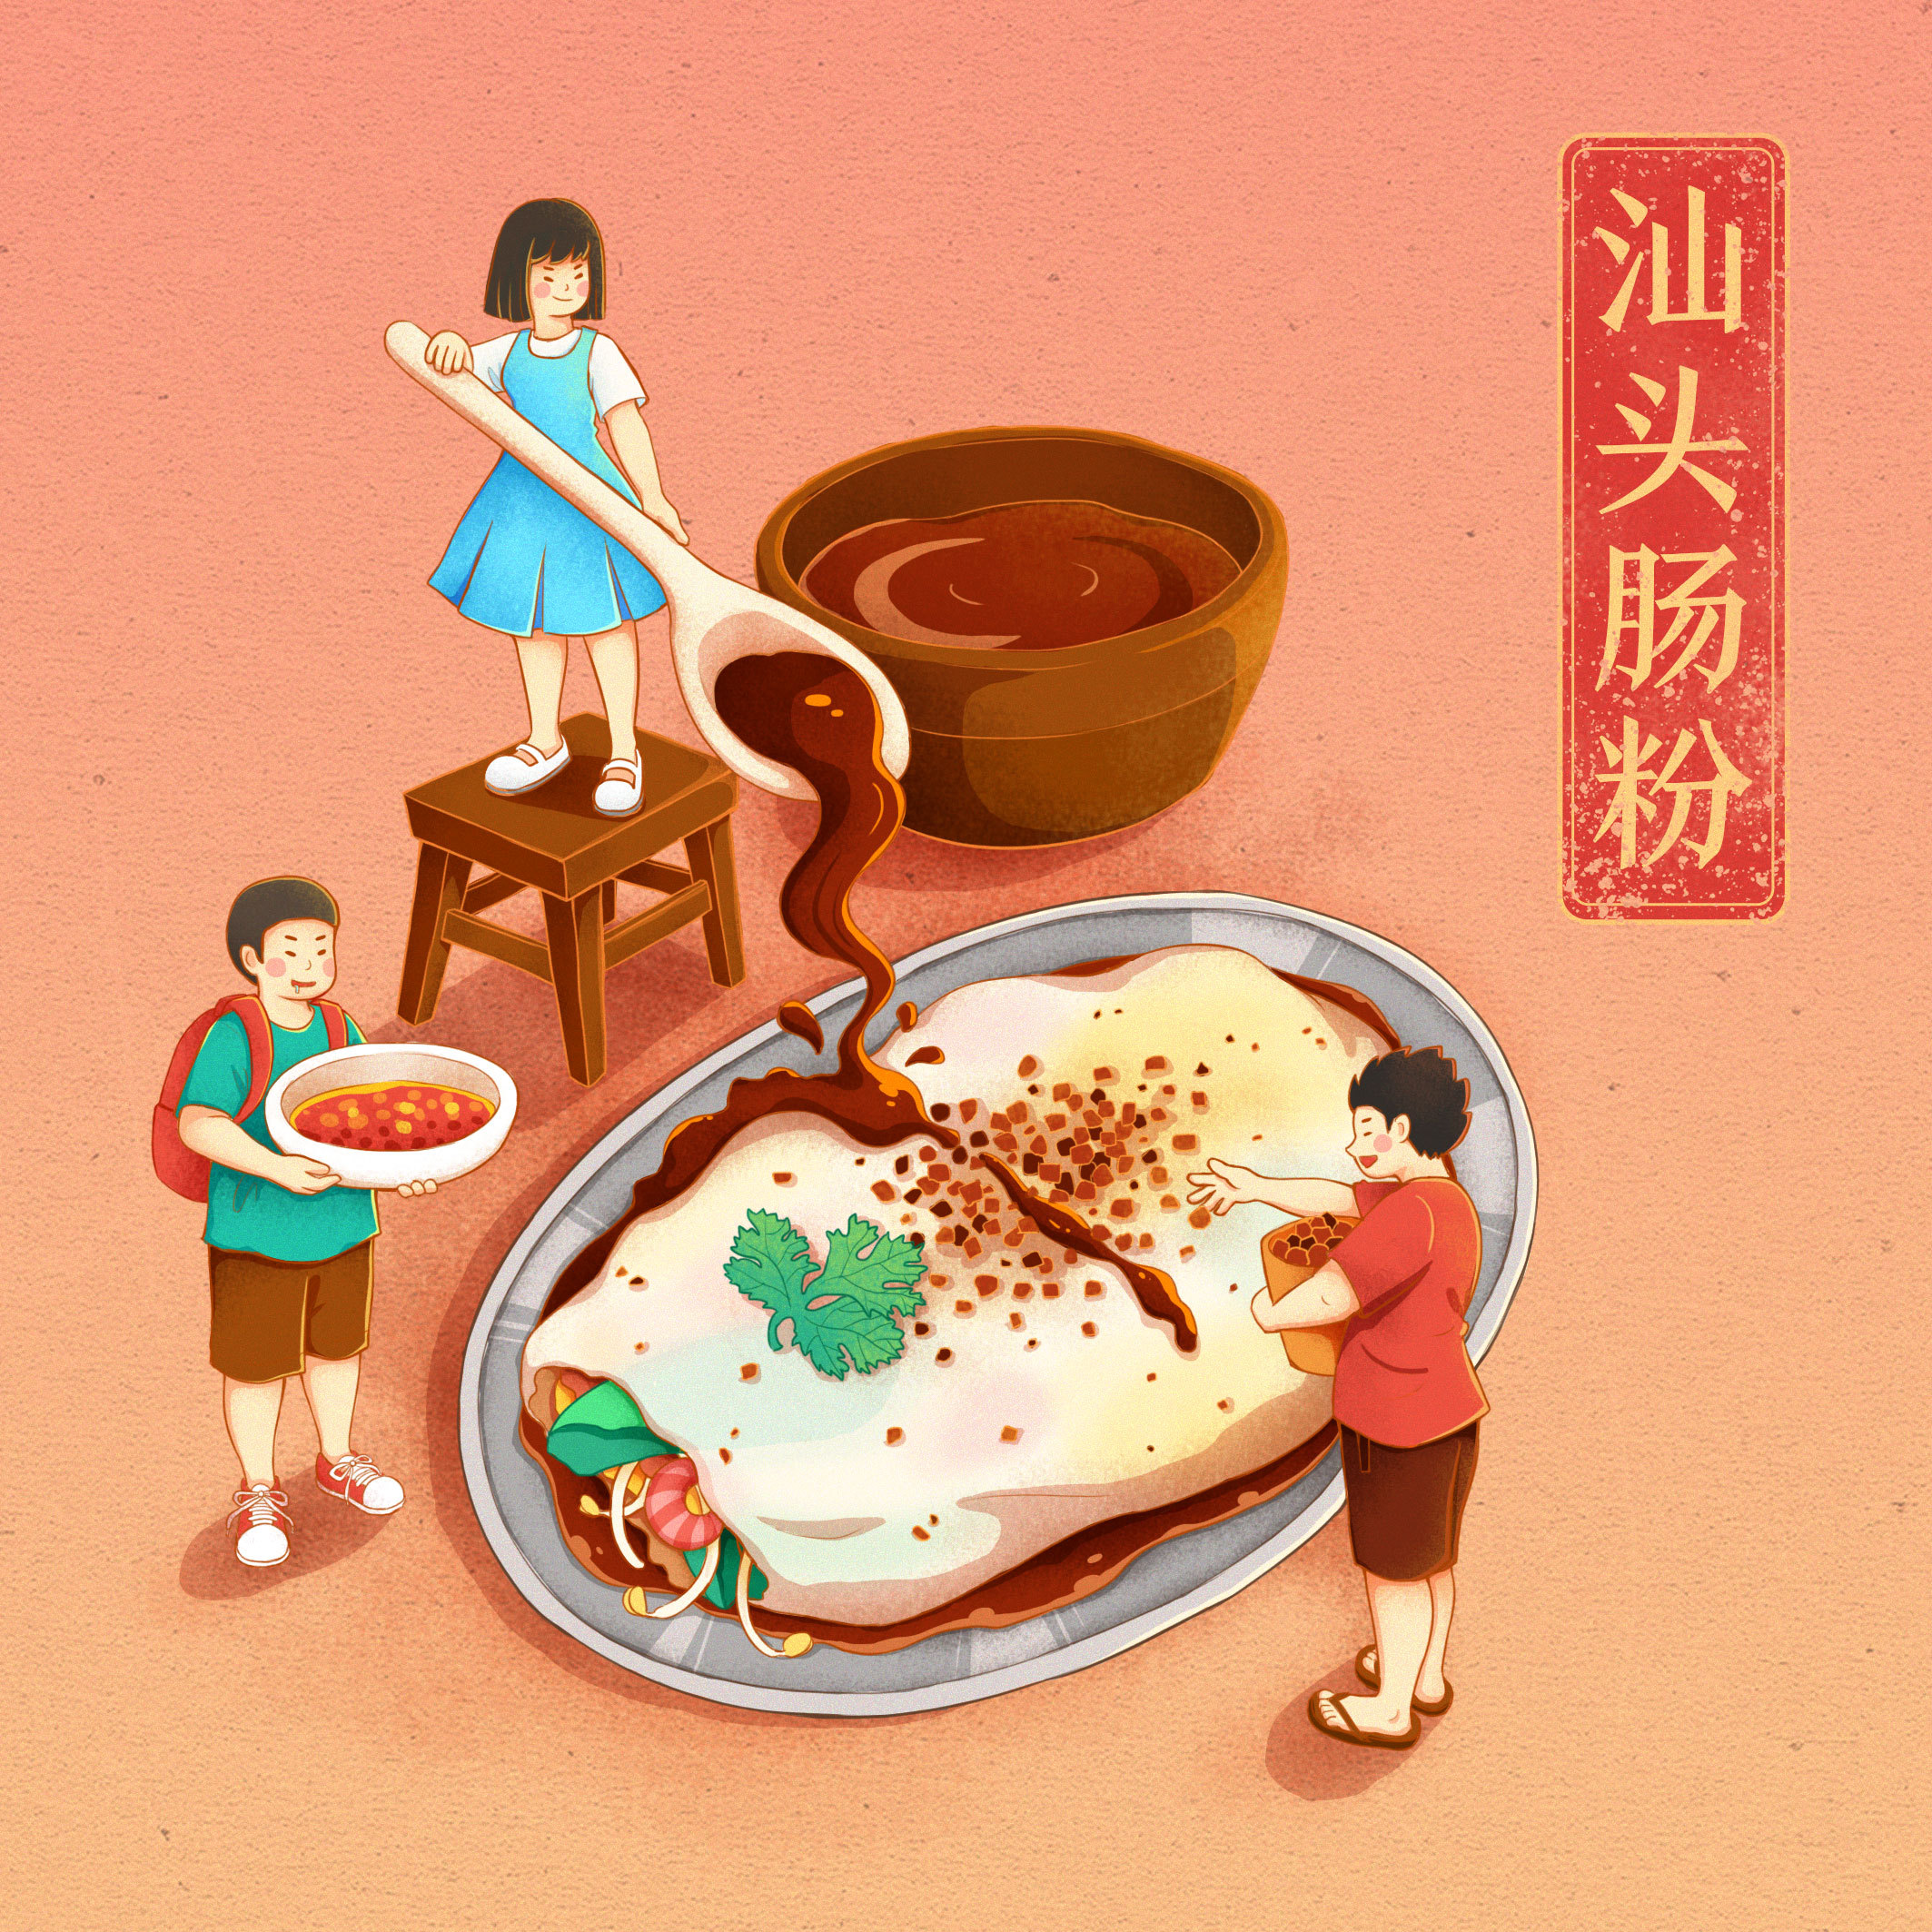 一些关于潮汕小吃的插画